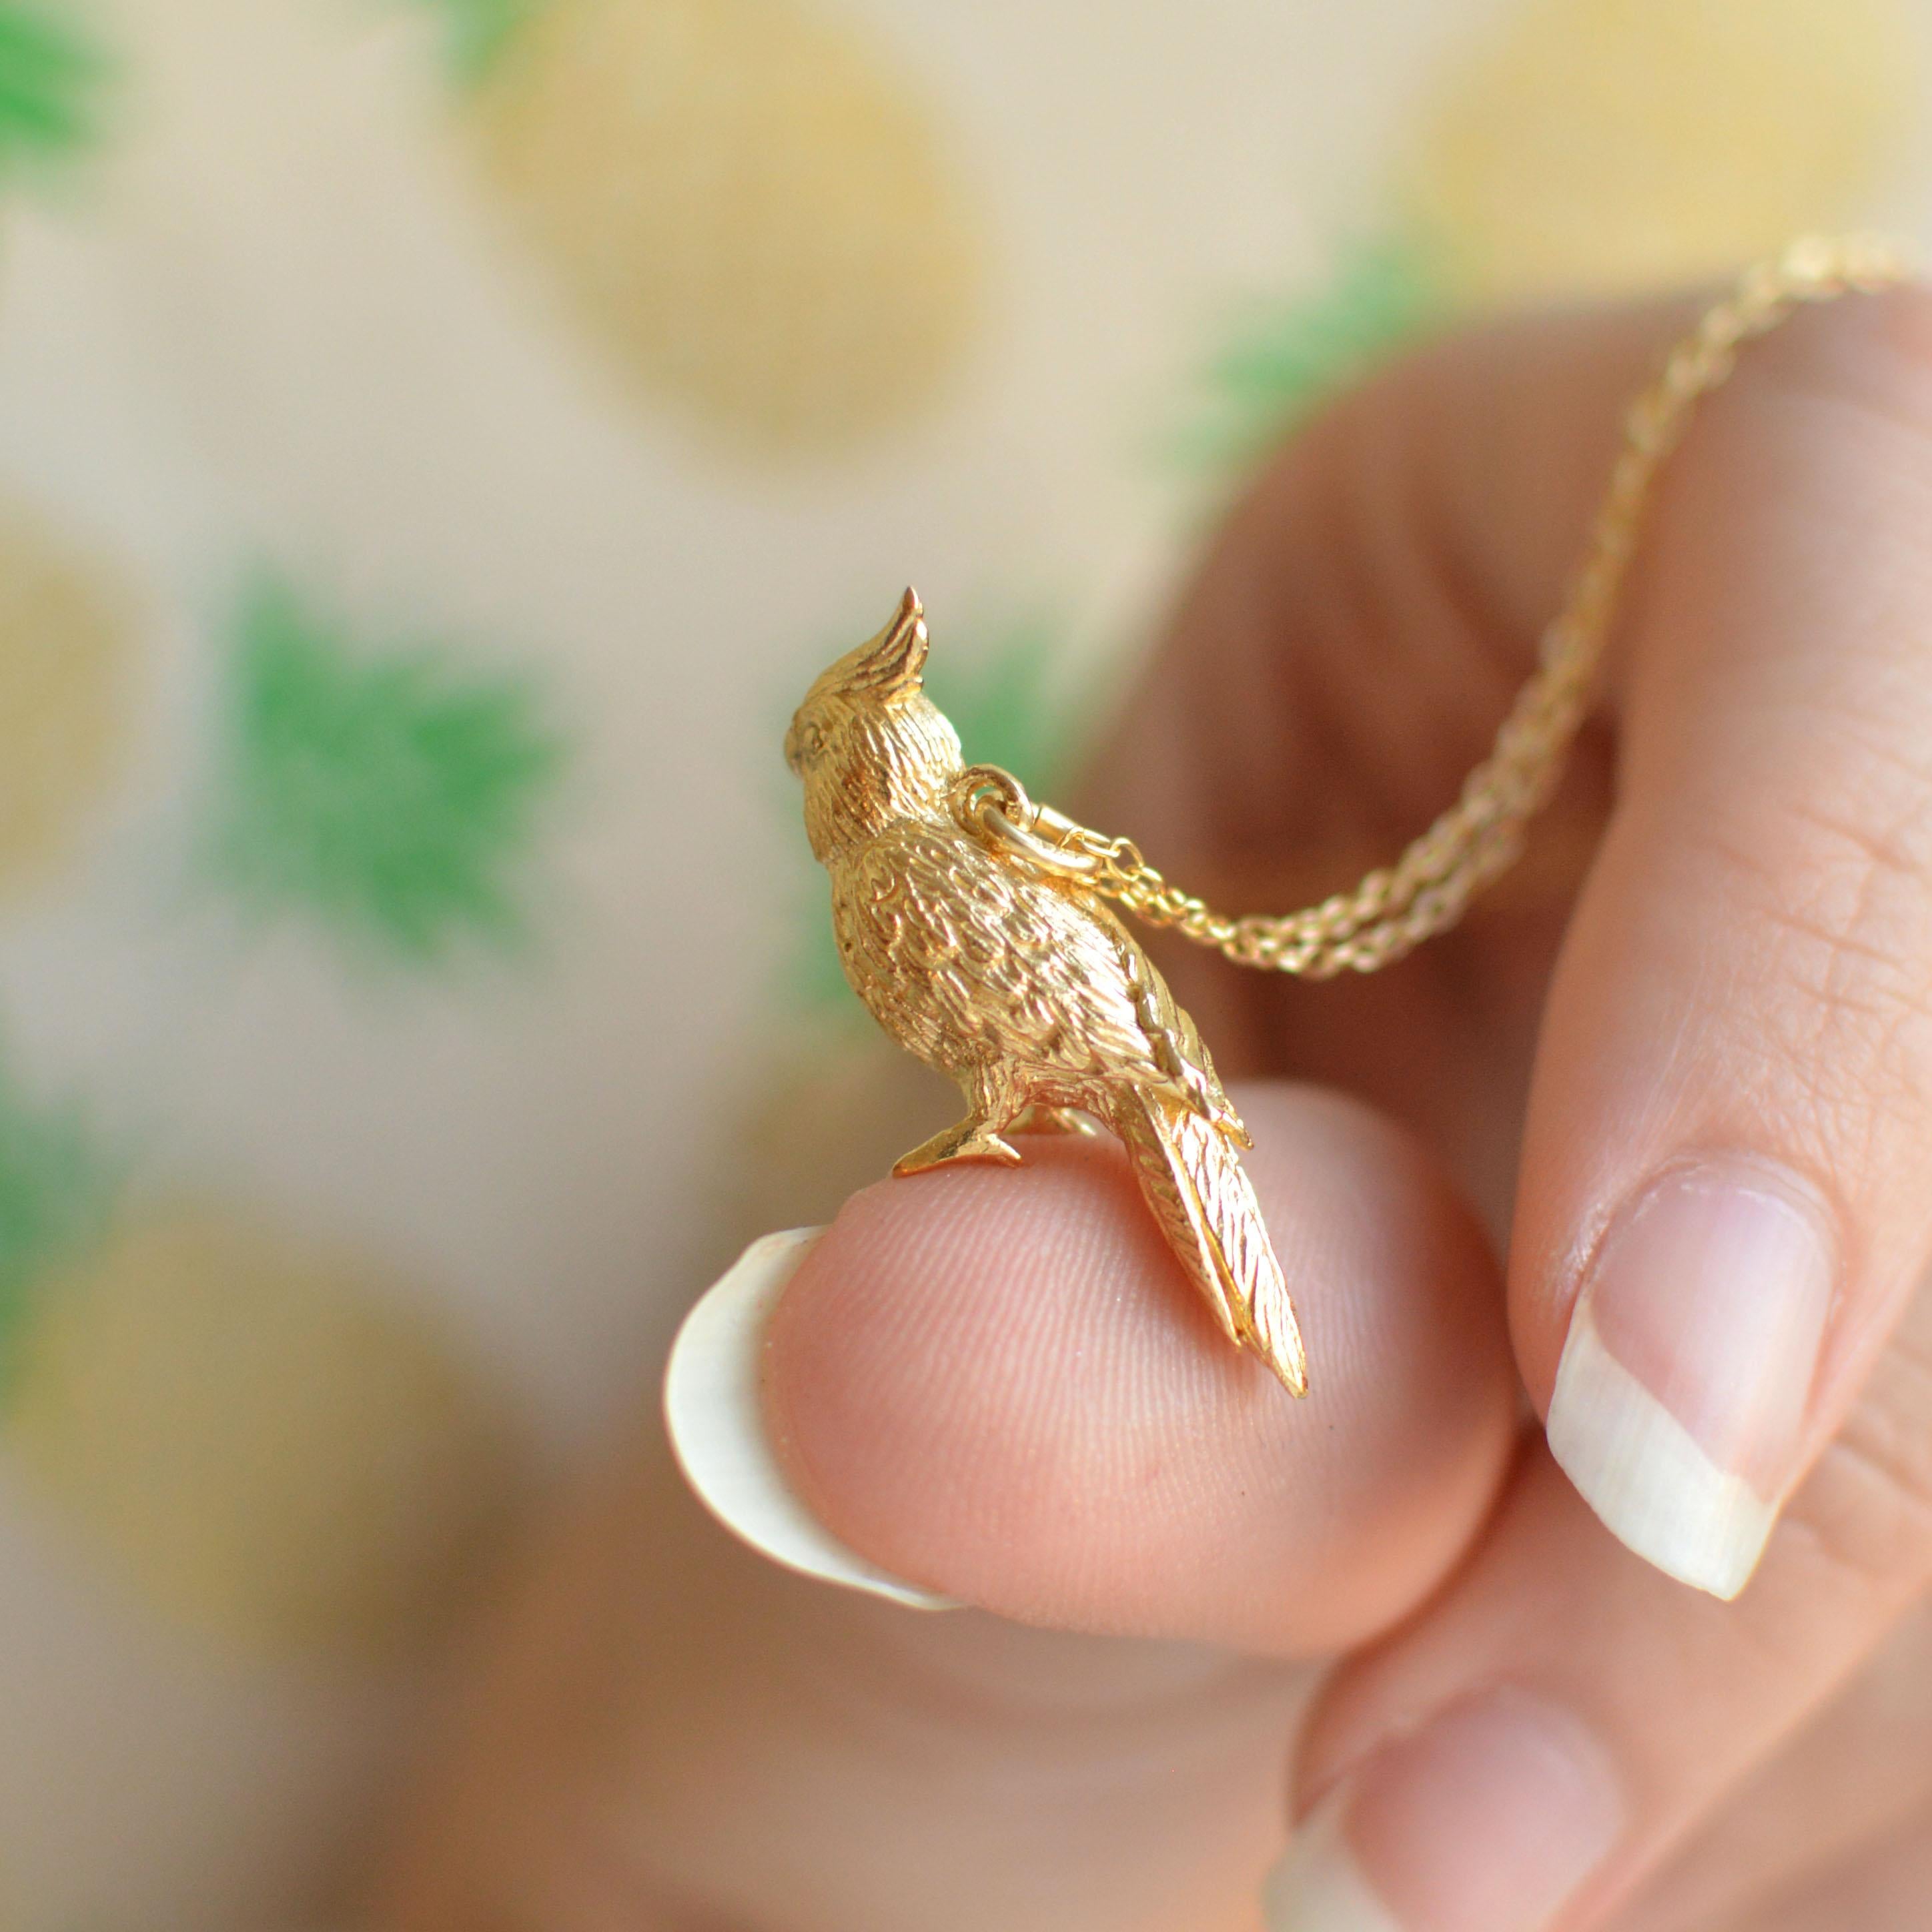 Ce petit pendentif en forme de coq est coulé en or massif 18 carats et fini à la main. Il a été créé à partir du dessin original de Lucy, sculpté à la main. 

Cet adorable pendentif en forme de coq est fabriqué à Londres, au Royaume-Uni, à partir